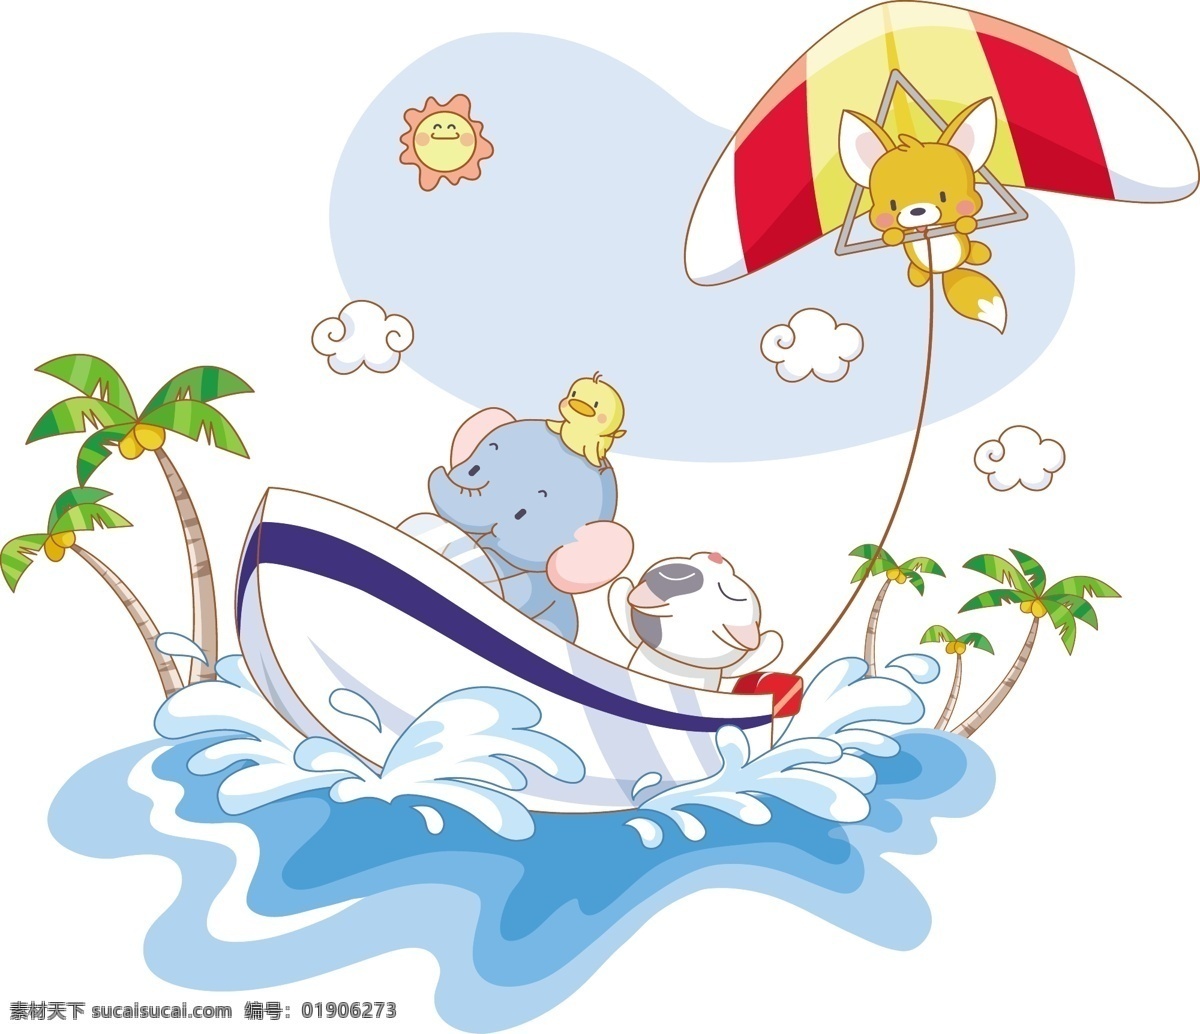 可爱卡通大象 卡通 可爱 大象 椰子树 风筝 大海 动漫 冲浪 划船 游艇 游行 小鸟 太阳 卡哇伊 白云 动漫动画 动漫人物